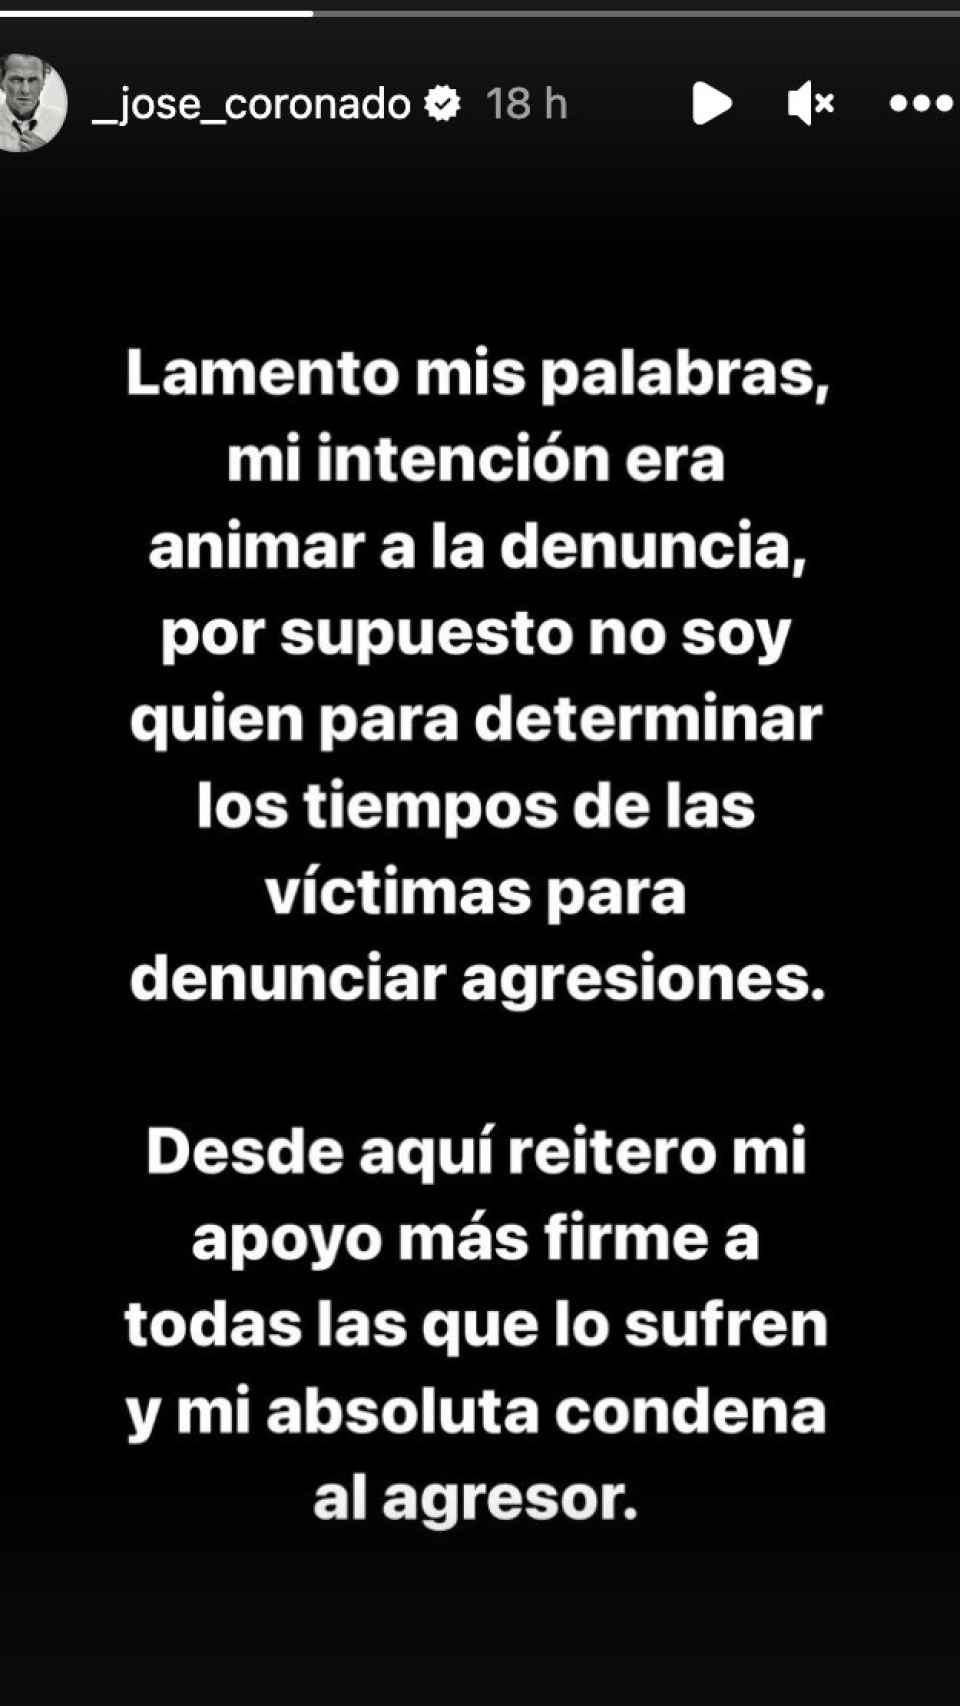 José Coronado se disculpa en una historia de Instagram.